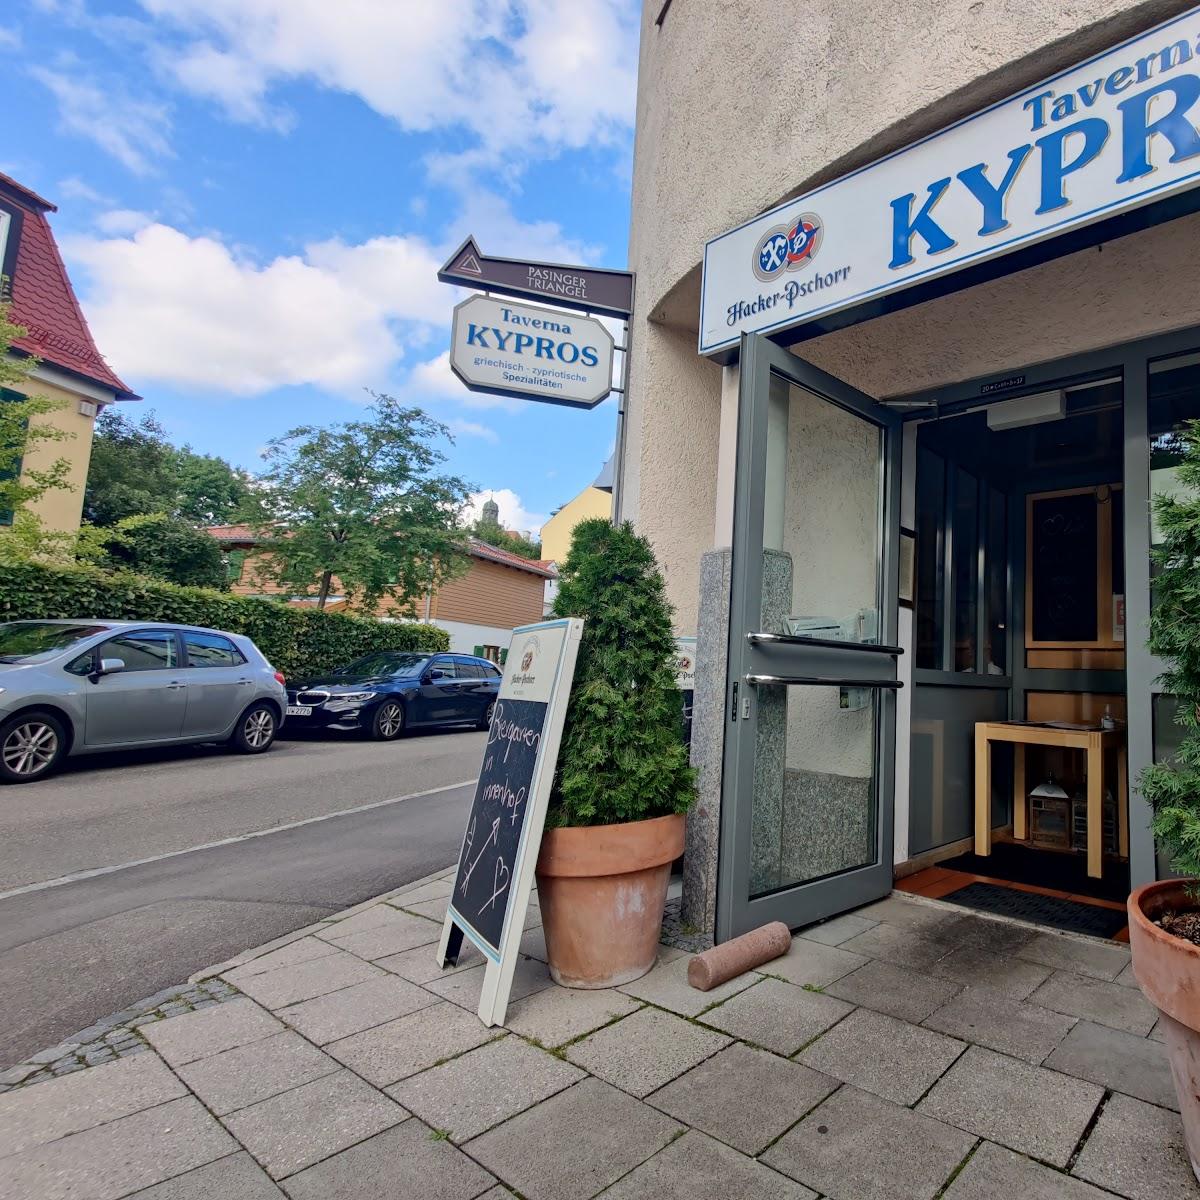 Restaurant "Taverna Kypros" in München